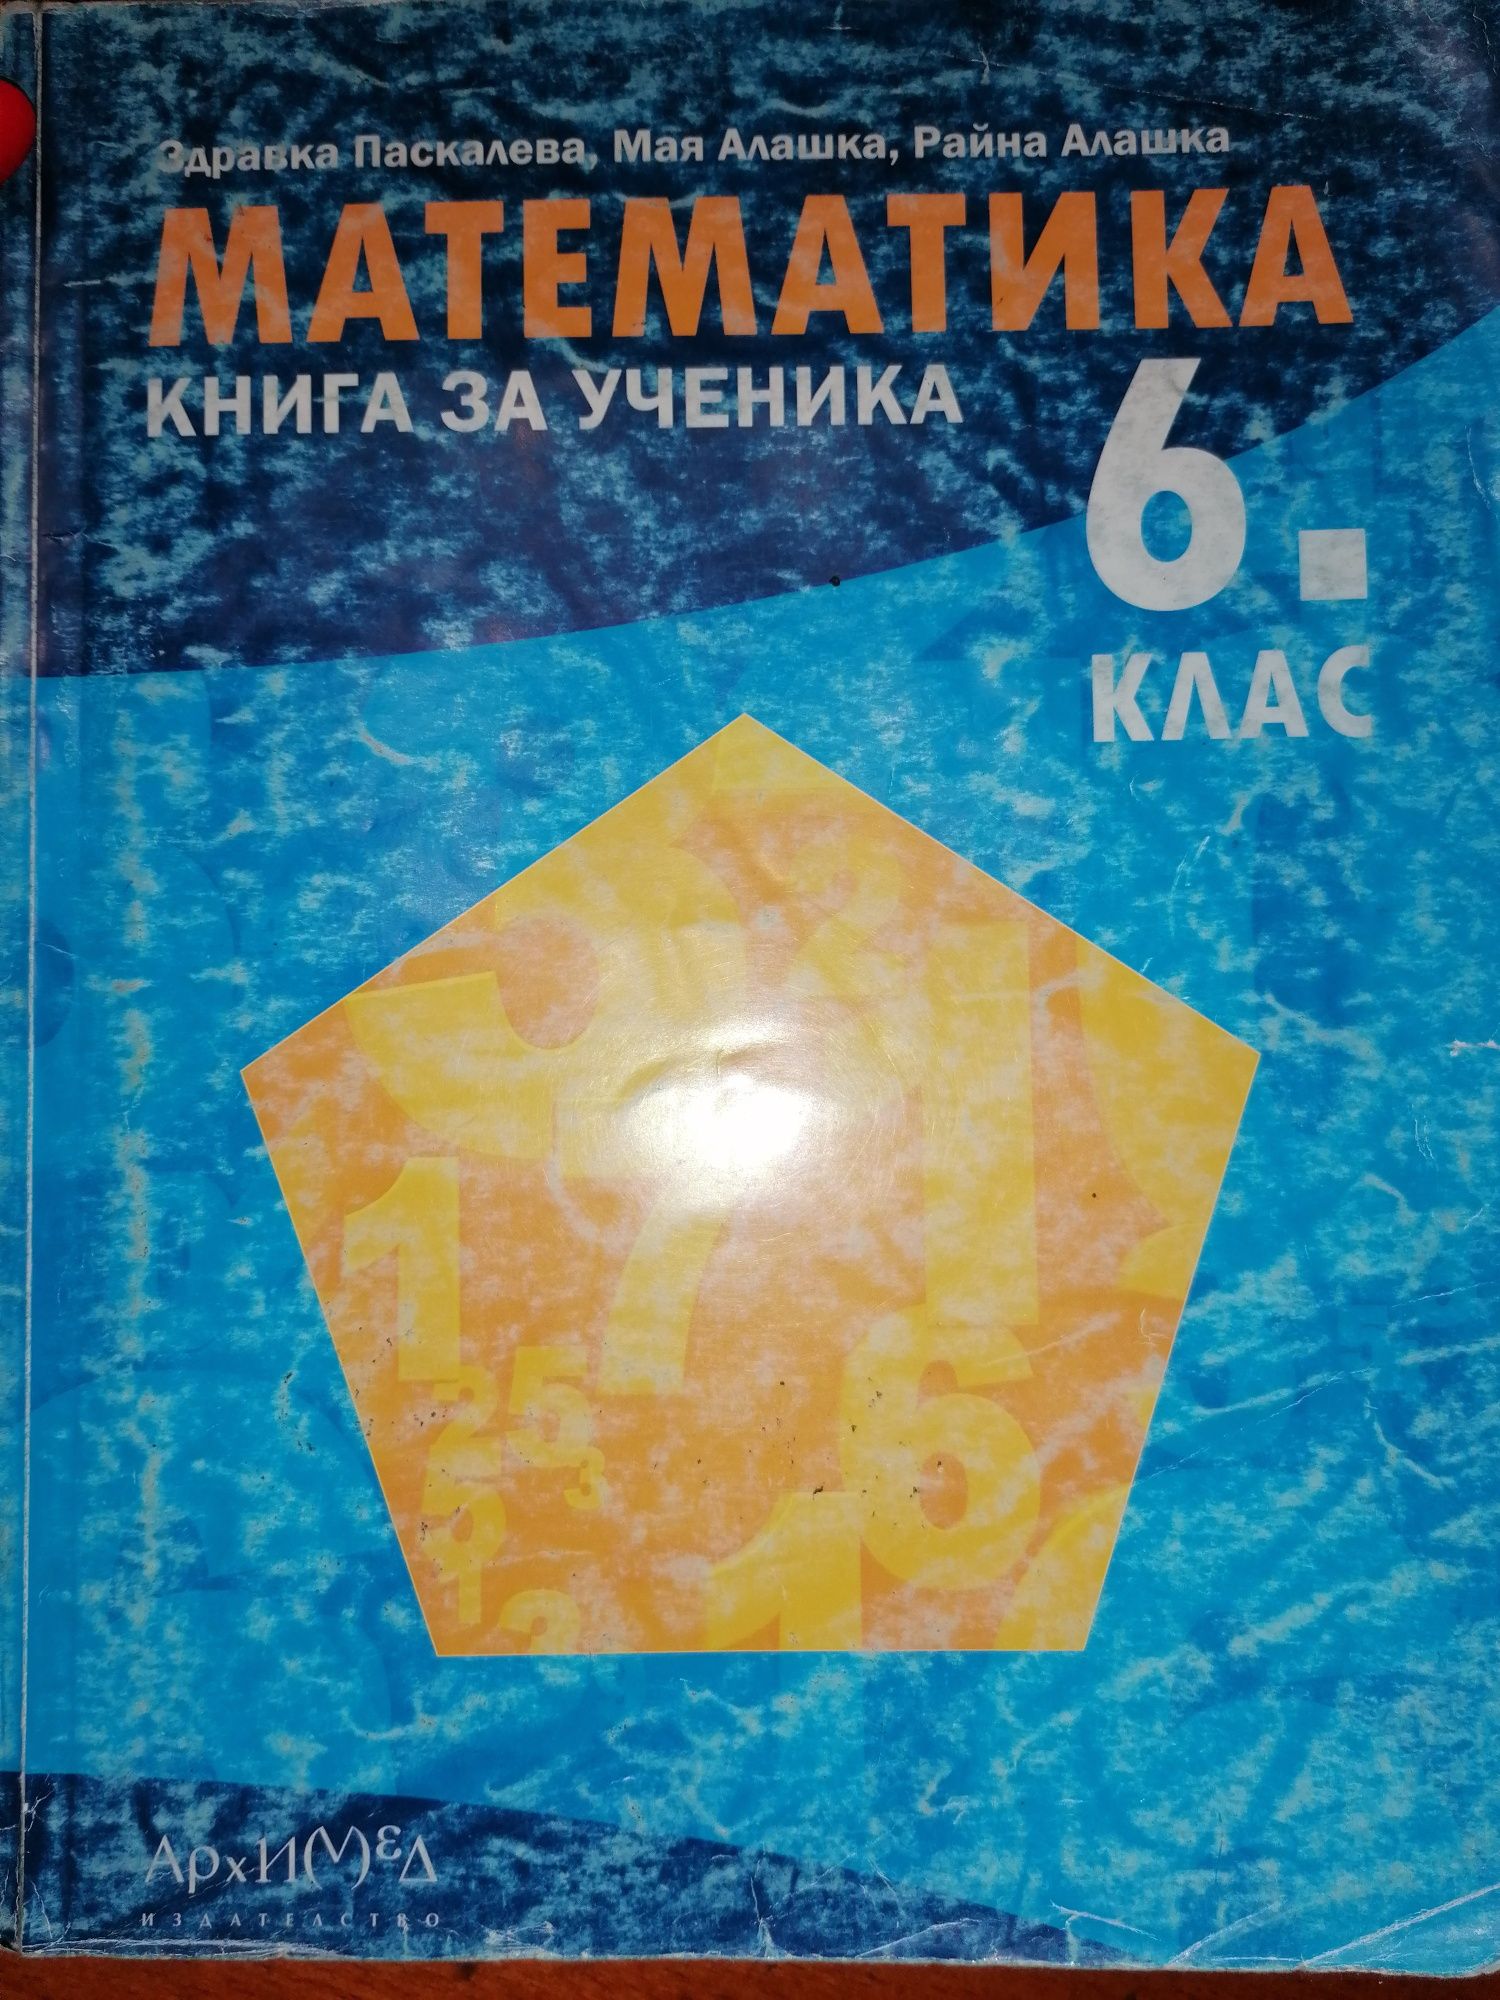 Математика книга за ученика